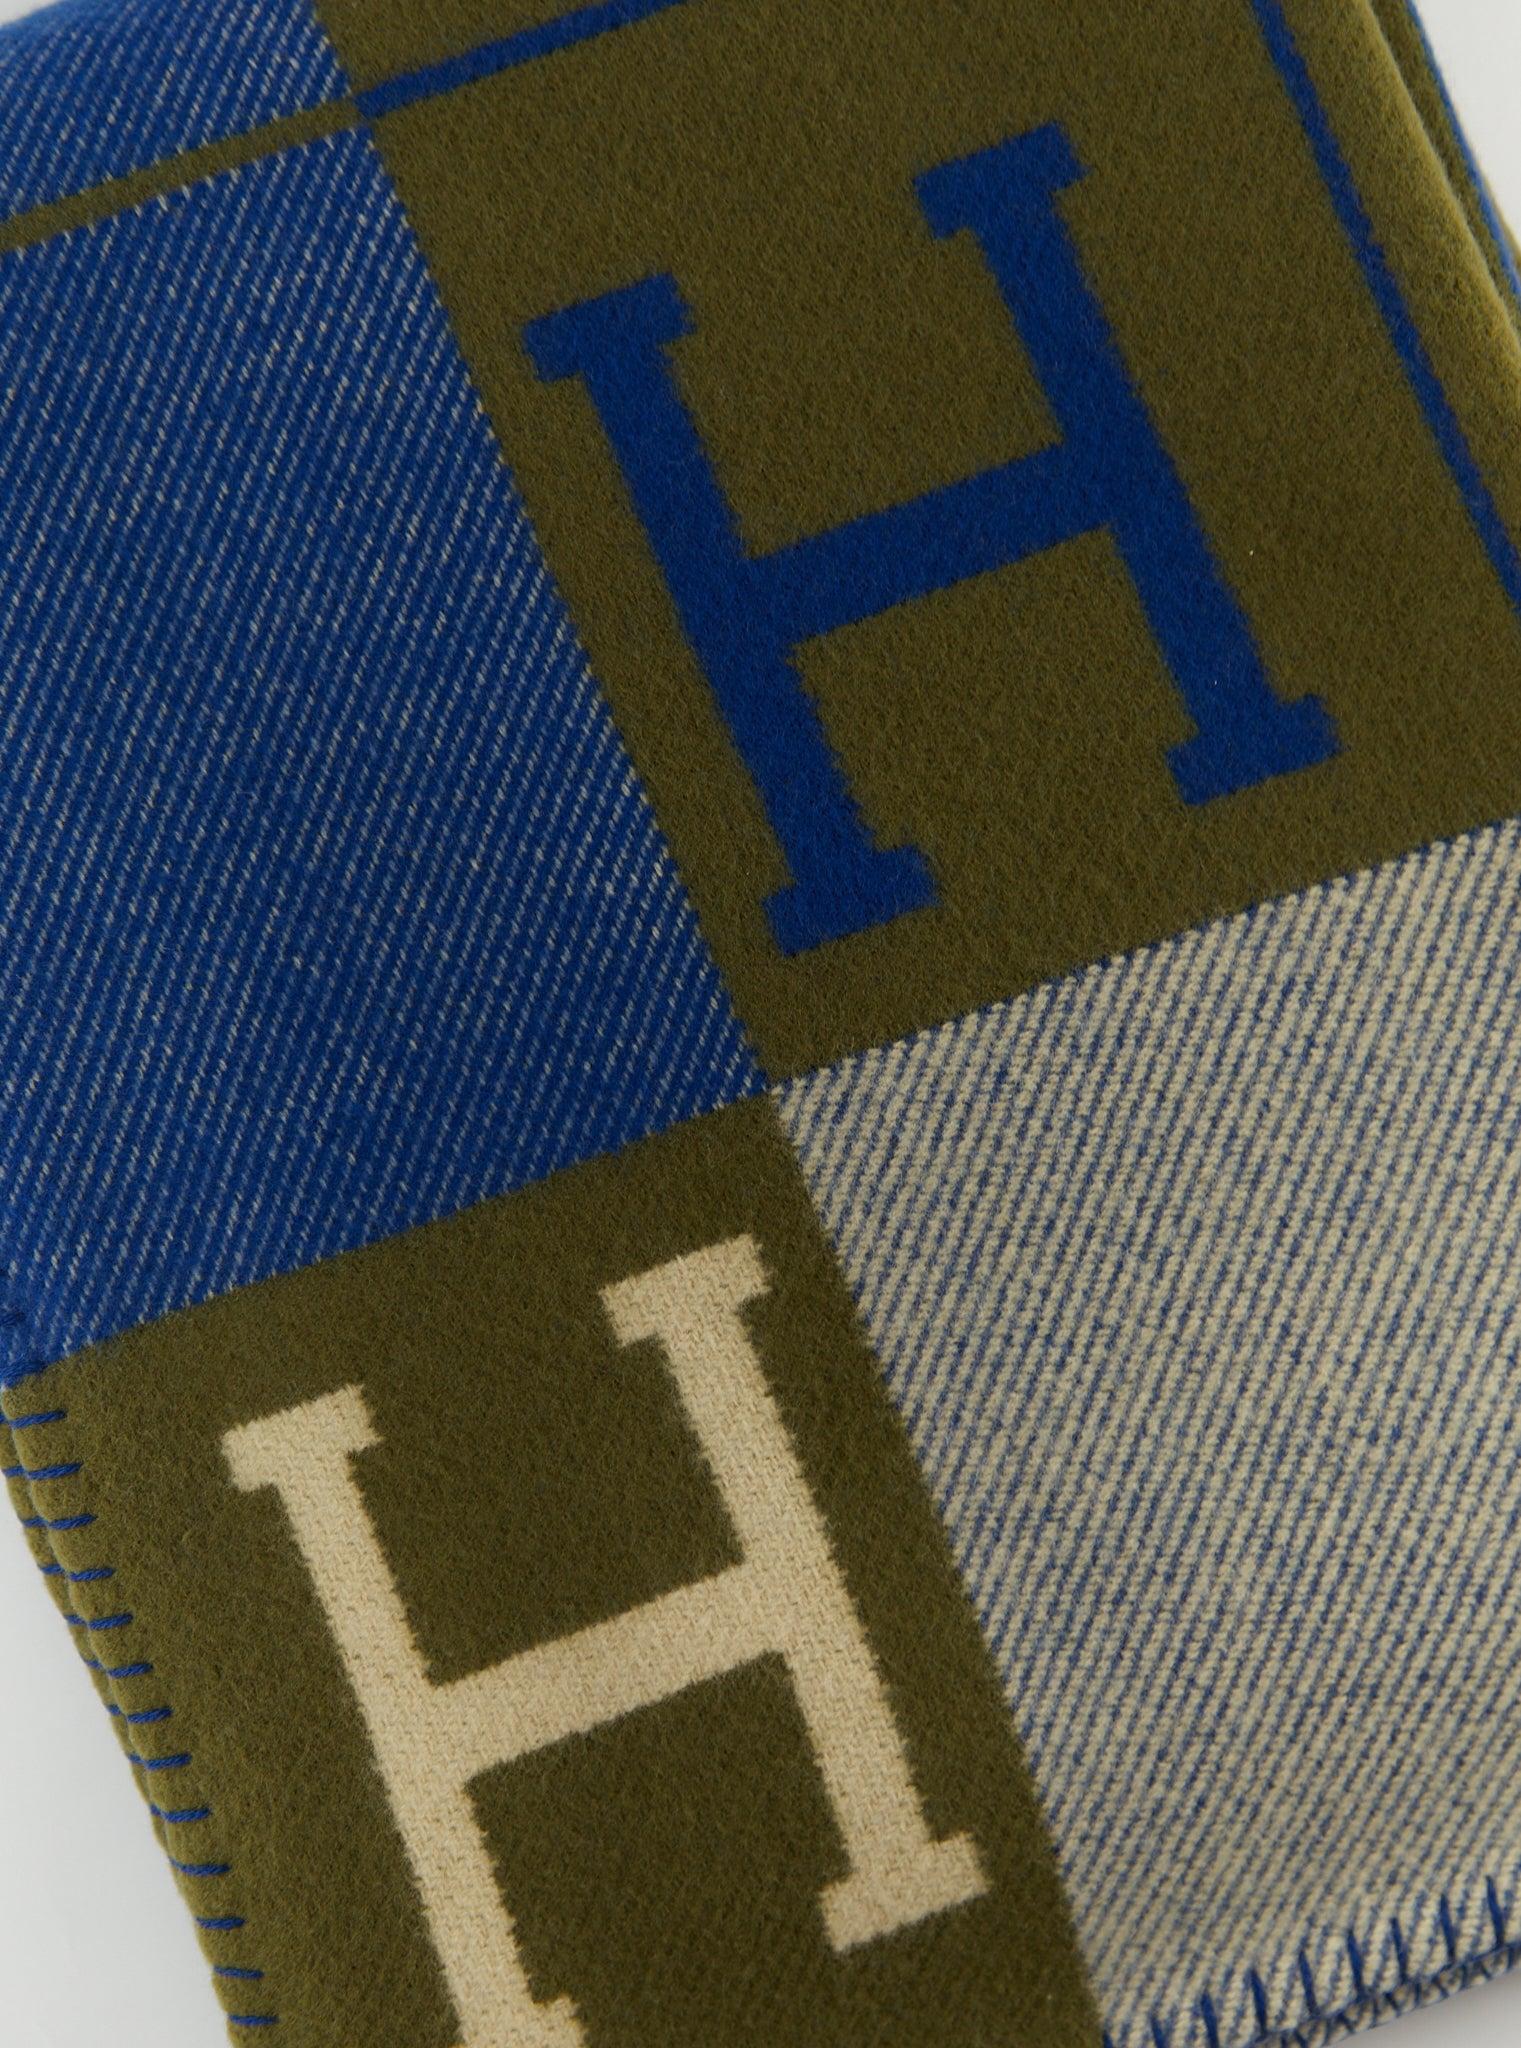 Plaid Hermès Avalon III en laine mérinos et cachemire (90% laine mérinos, 10% cachemire)

Marin & Kaki

Fabriqué en Grande-Bretagne

Dimensions : L 135 x H 170 cm 

